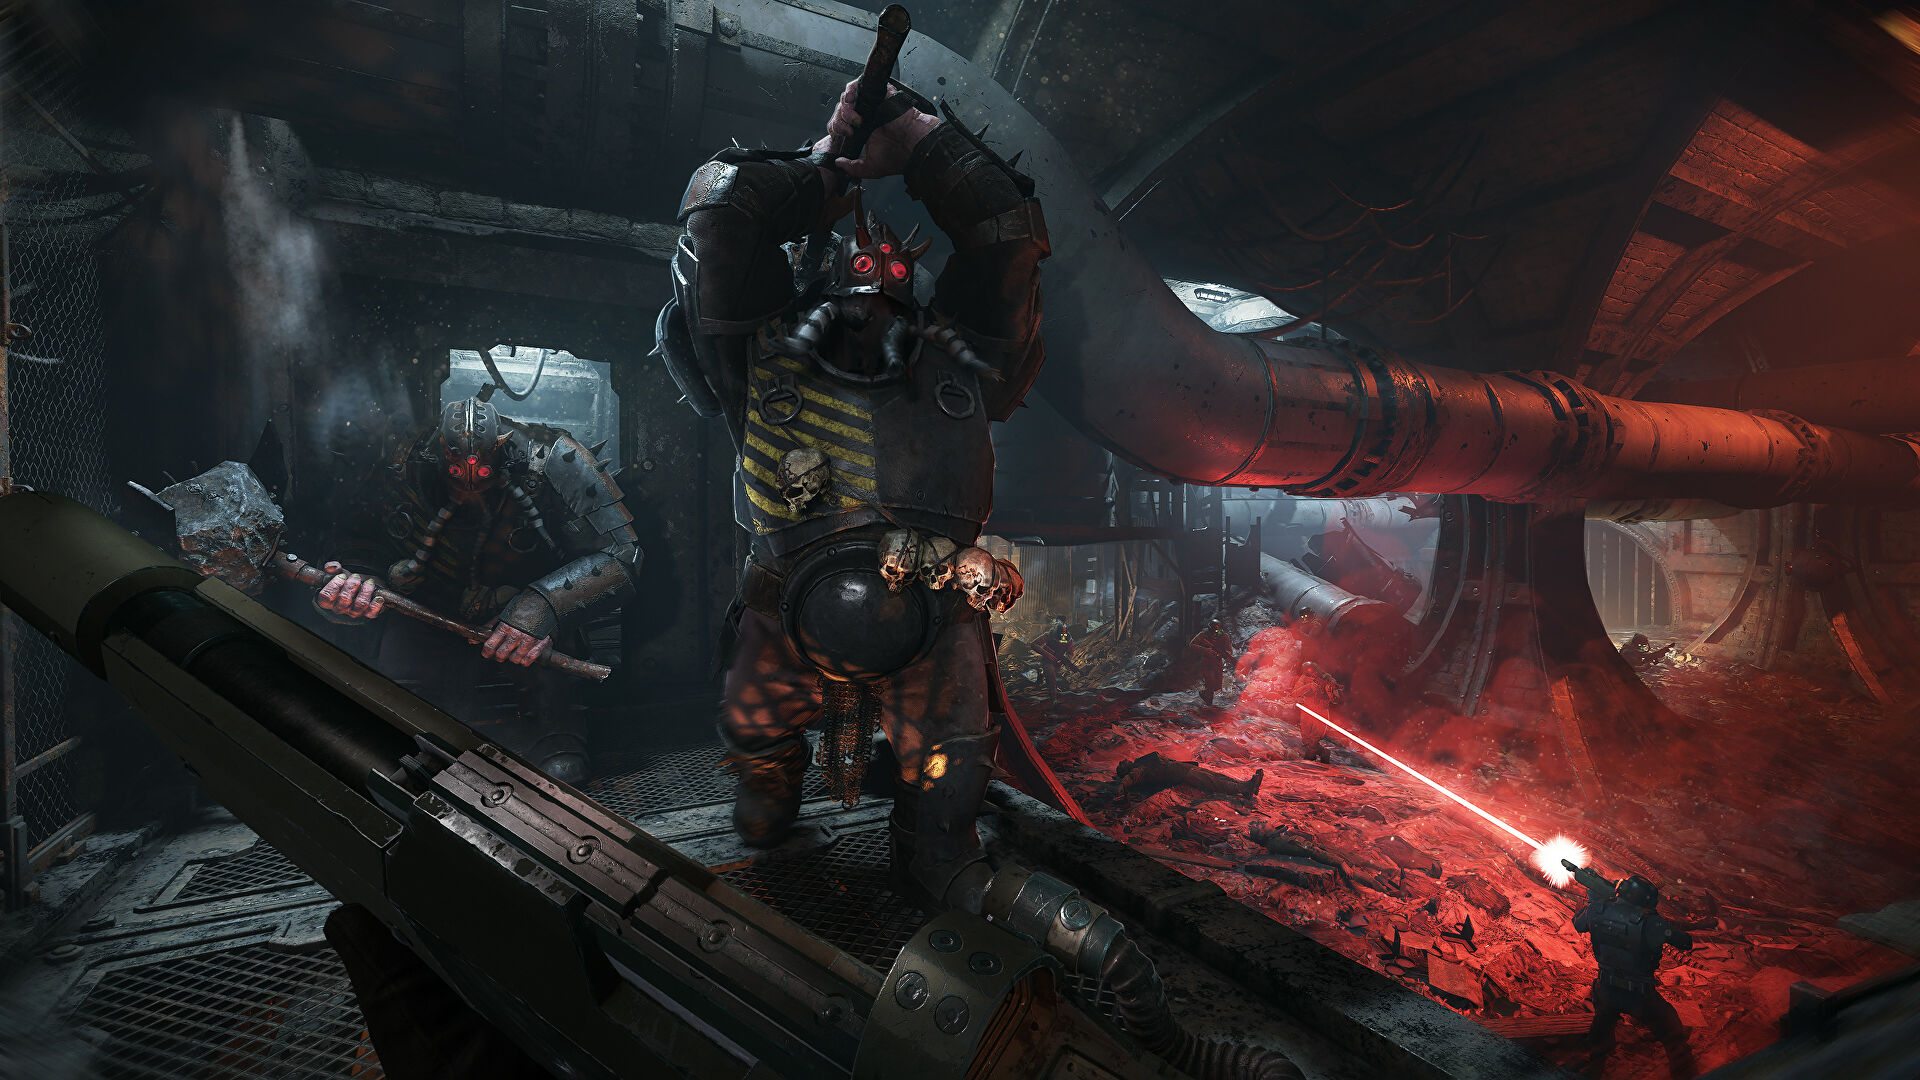 Warhammer 40:000: Darktide Xbox Series X/S release delayed to address feedback